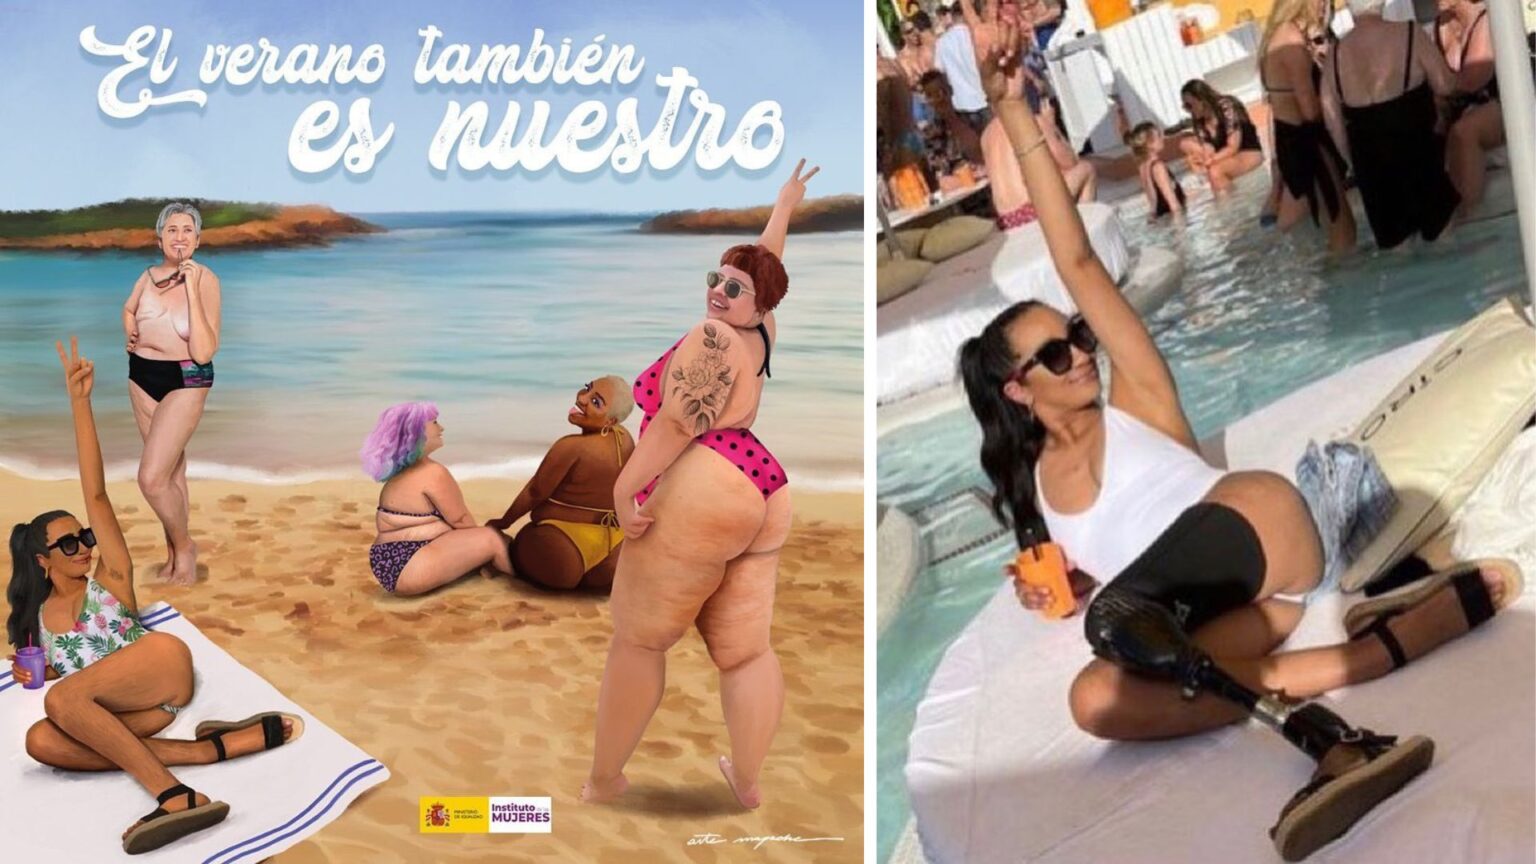 À droite, une publication Instagram de Siân Lord, dont la prothèse a été effacée par l'illustratrice Artemapache